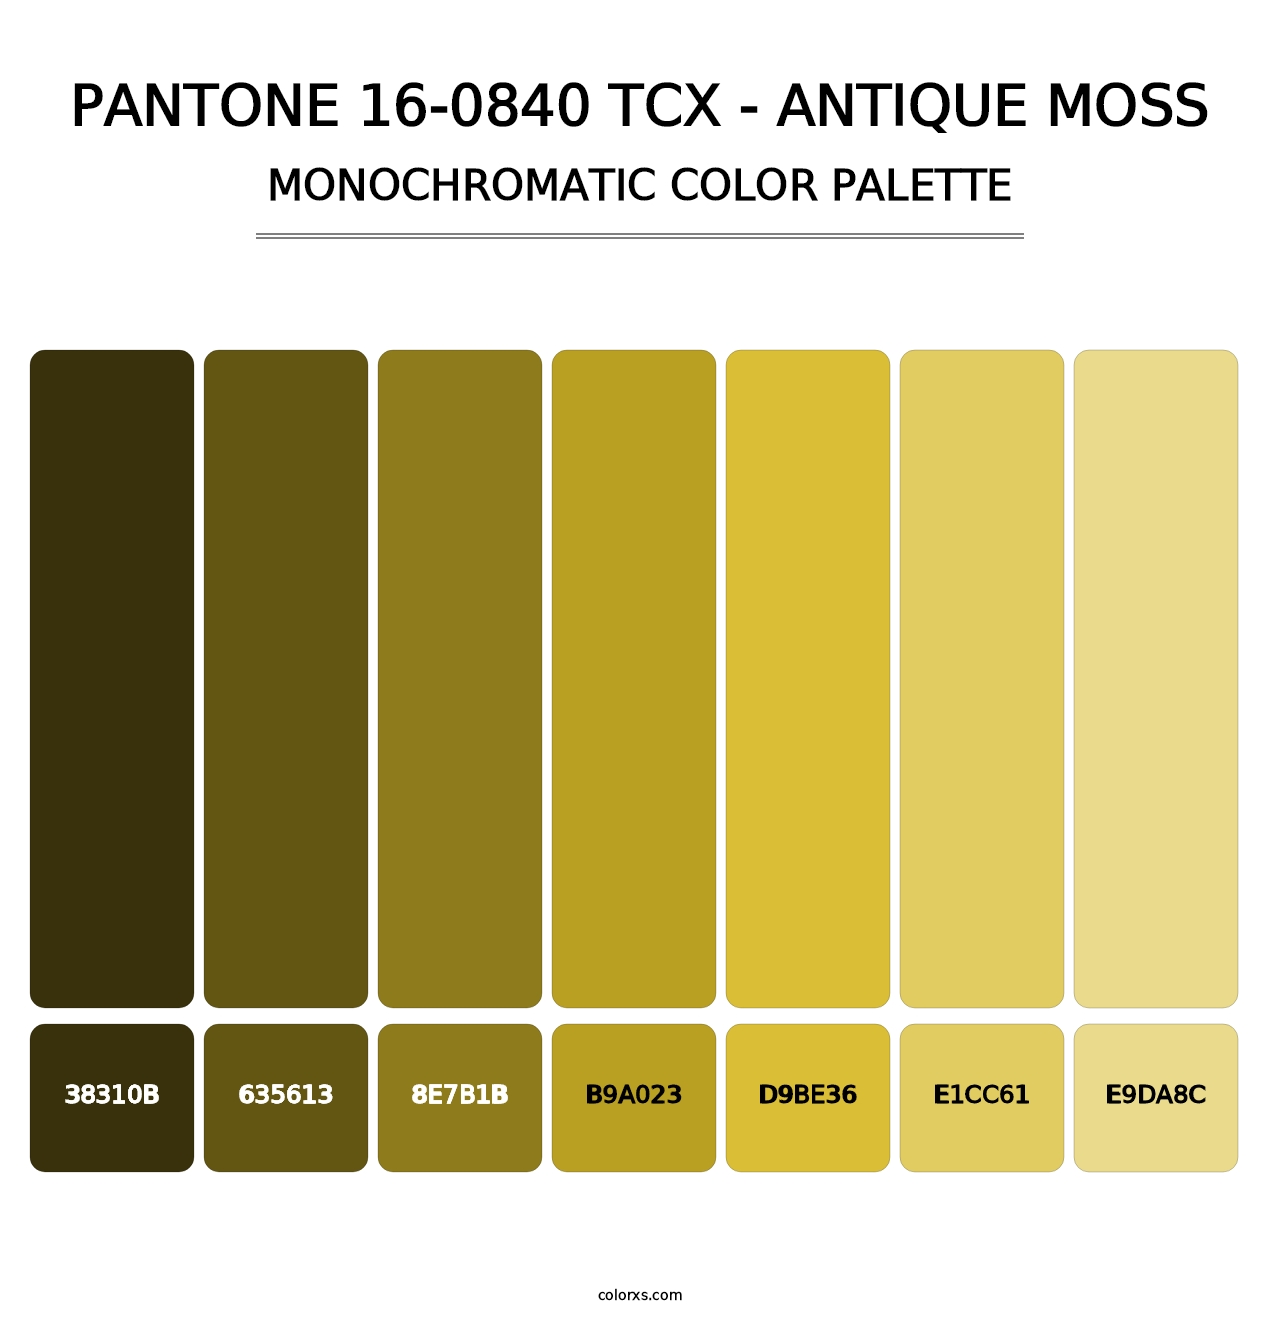 PANTONE 16-0840 TCX - Antique Moss - Monochromatic Color Palette